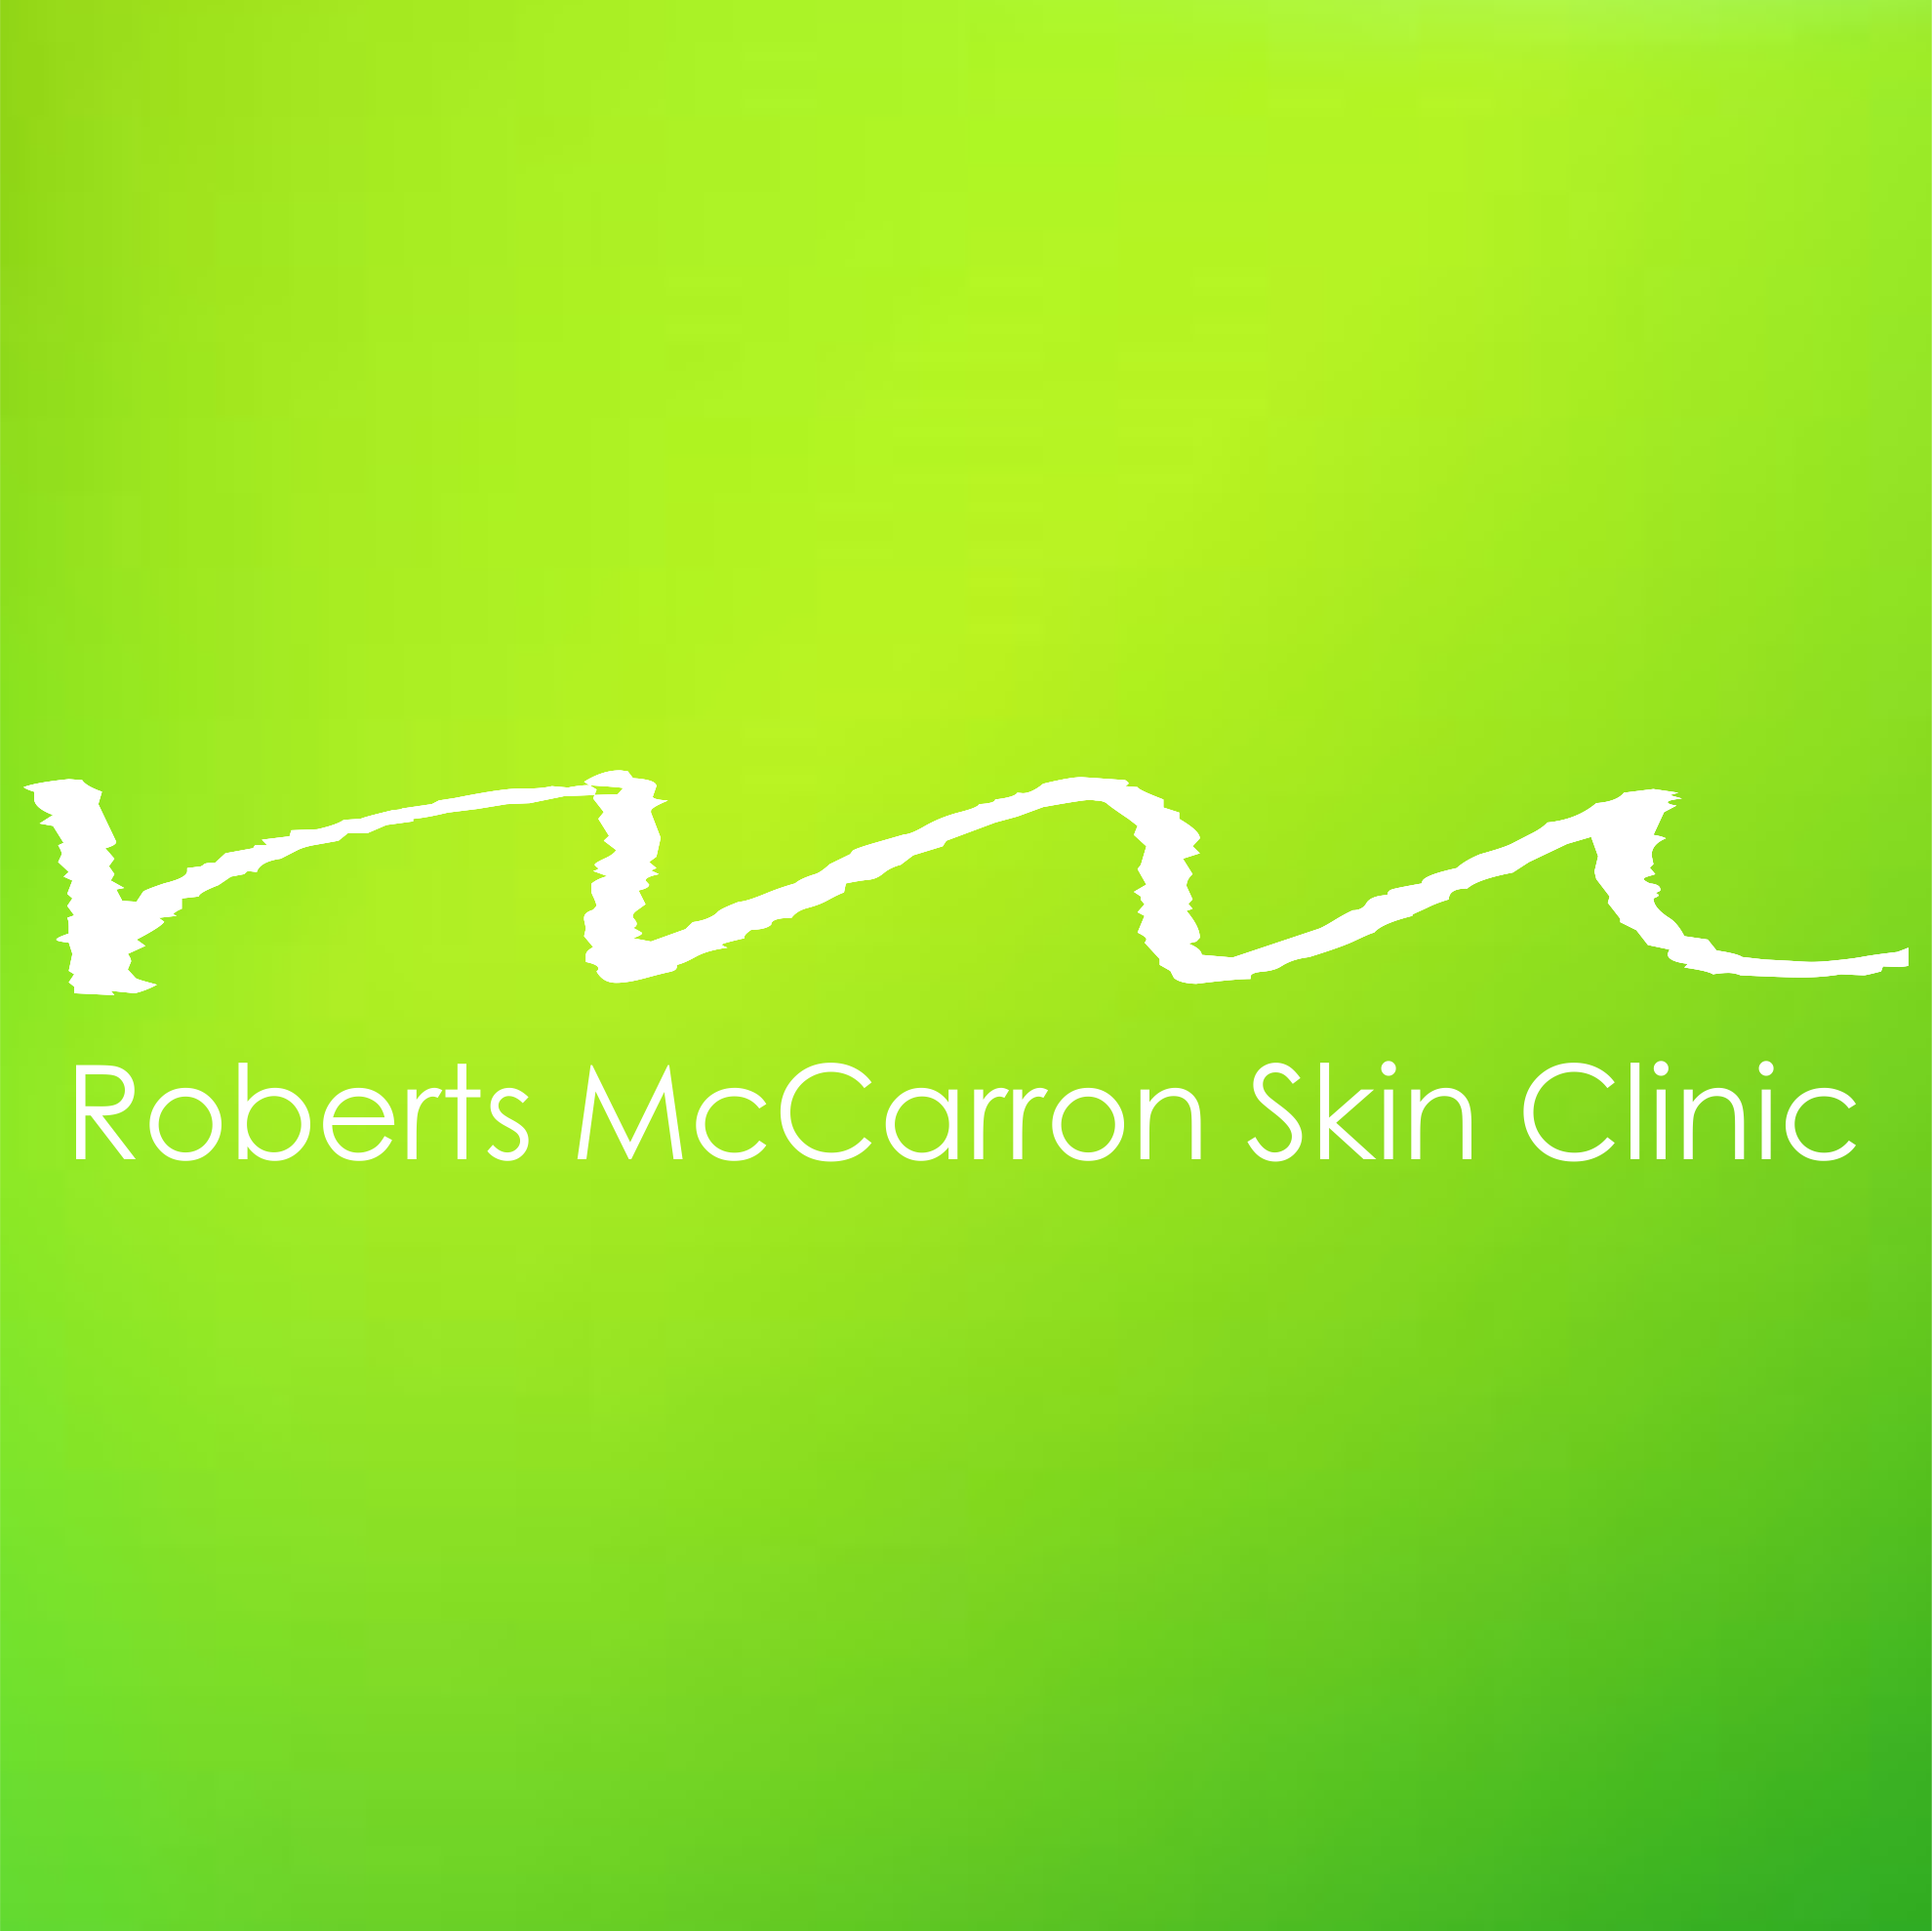 Roberts McCarron Skin Clinic